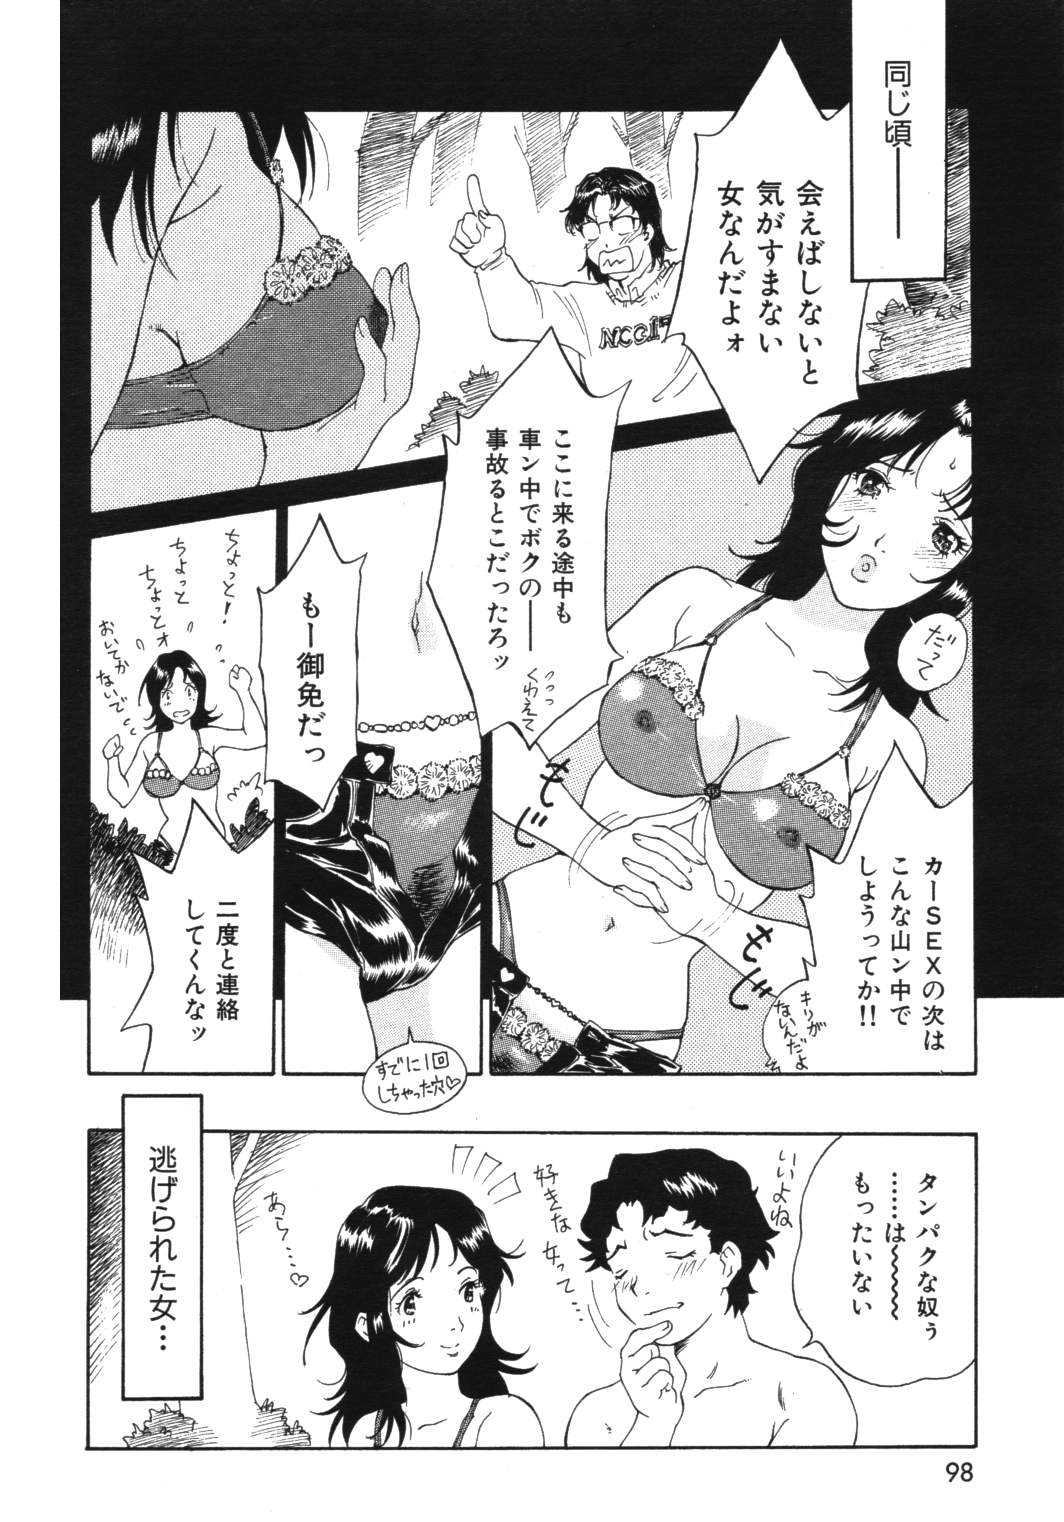 [2006.12.15]Comic Kairakuten Beast Volume 14 